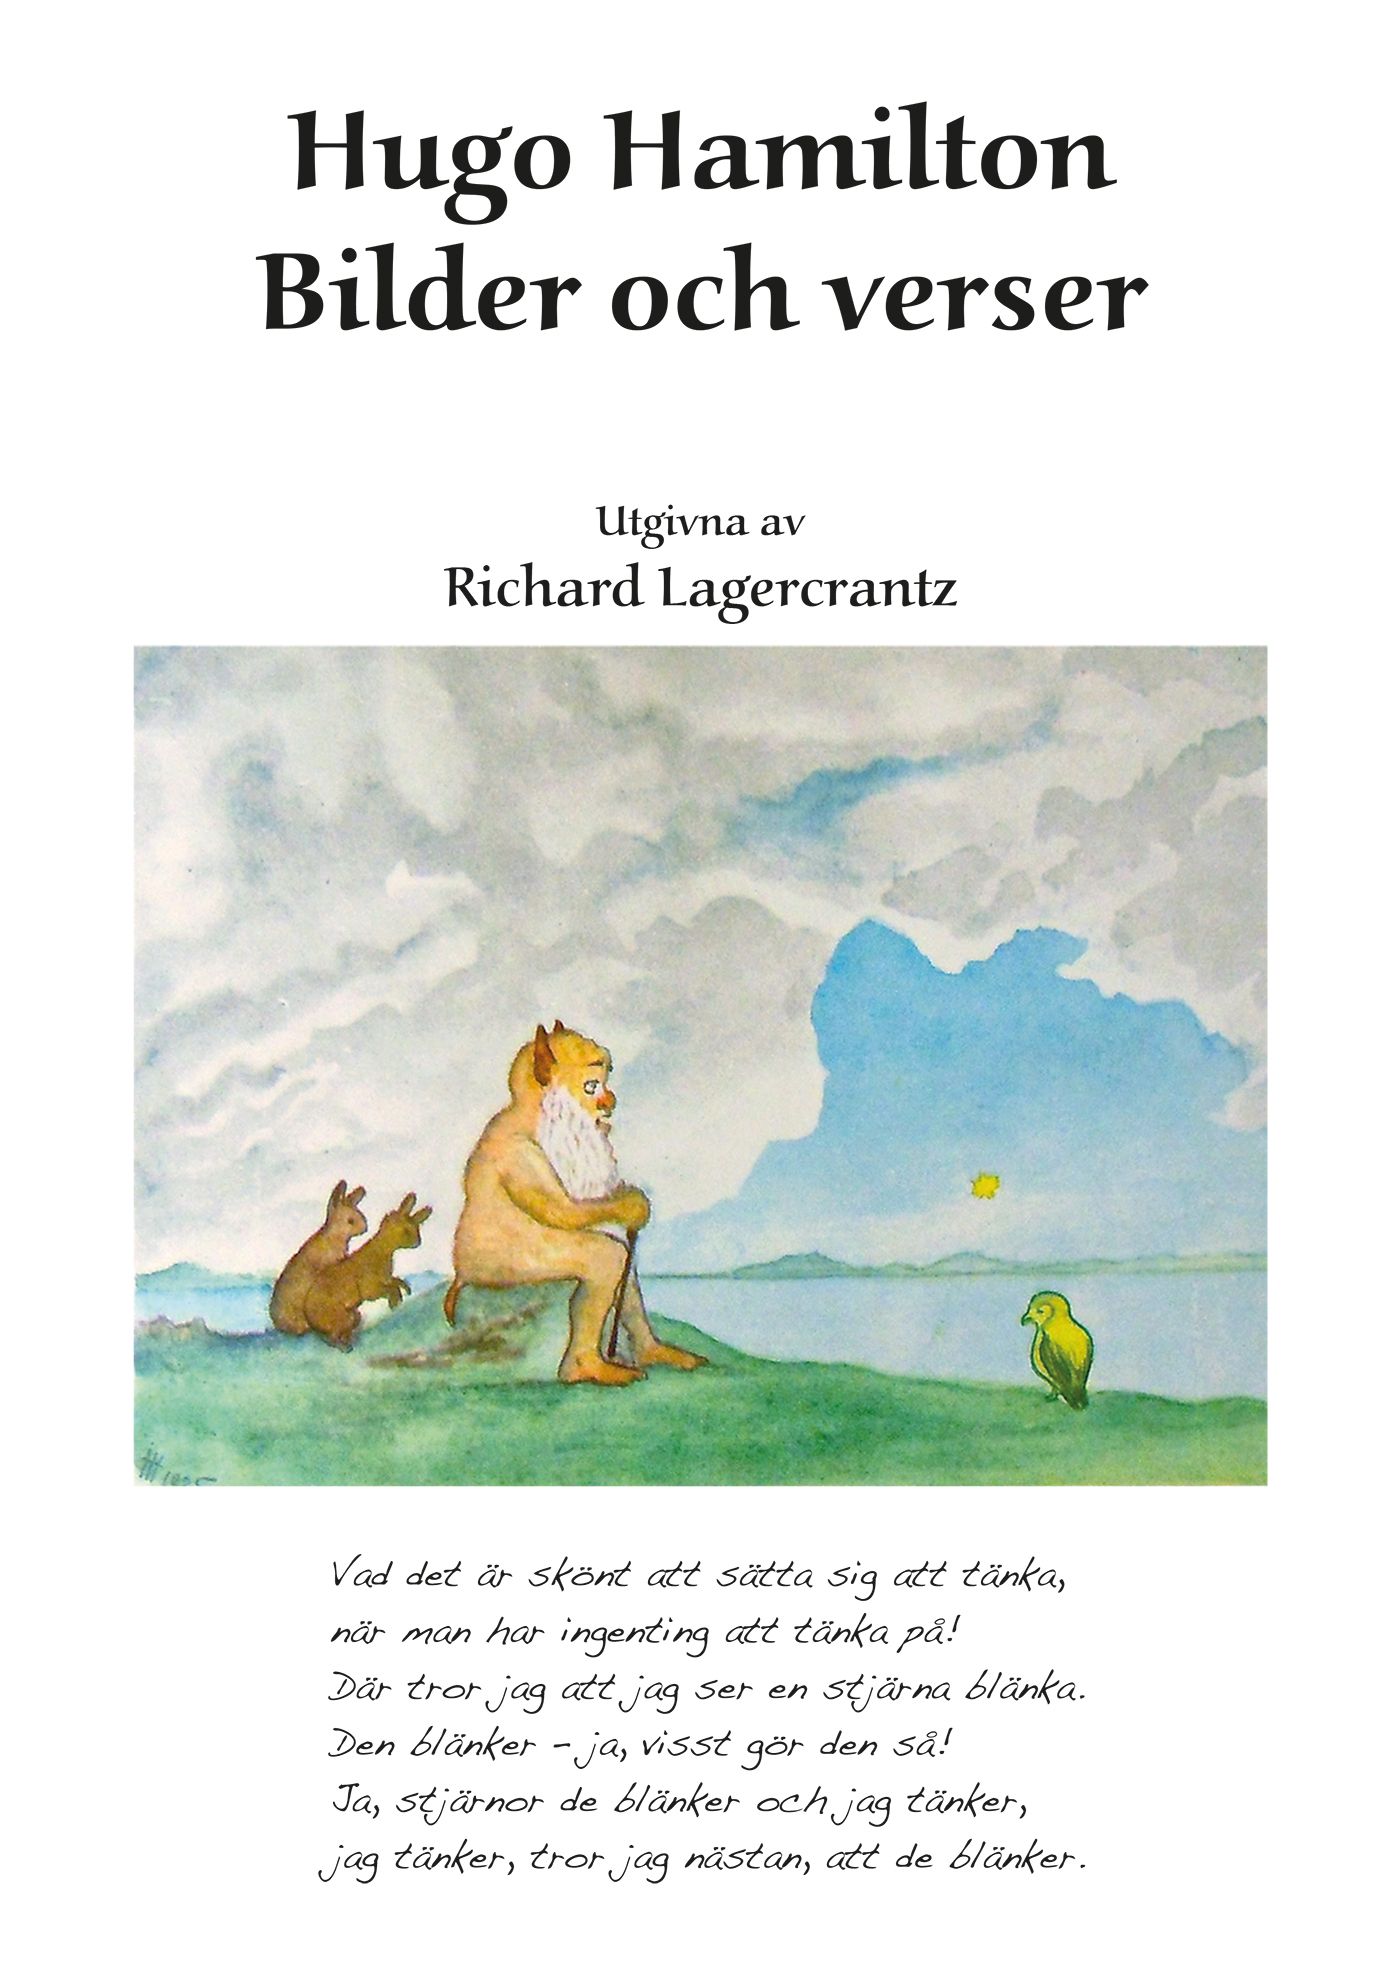 Hugo Hamilton: Bilder och verser, eBook by Richard Lagercrantz